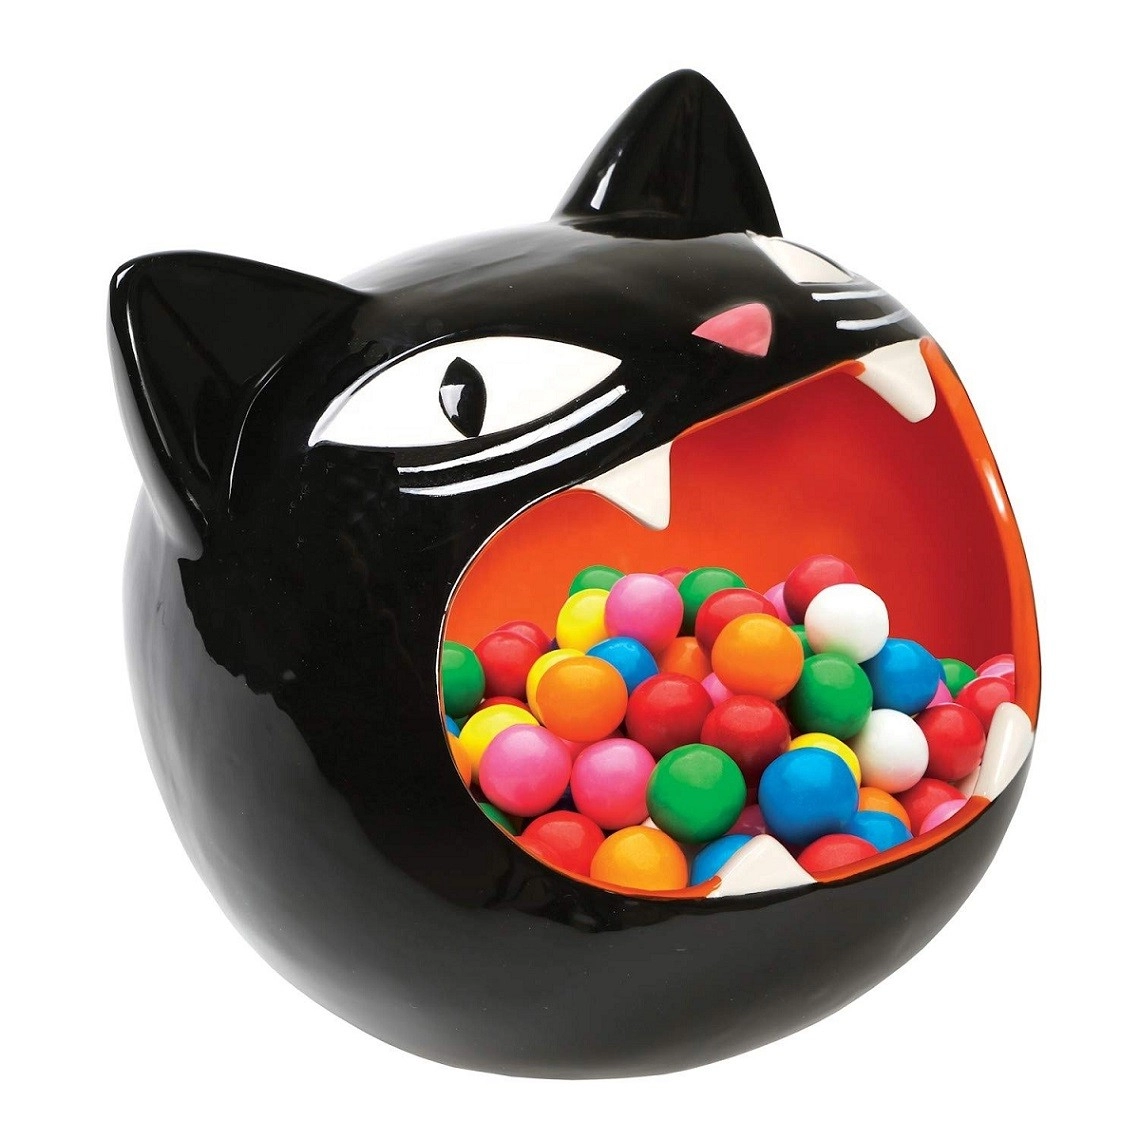 Cuenco de cerámica para dulces de gato negro, decoración para platos de gatito